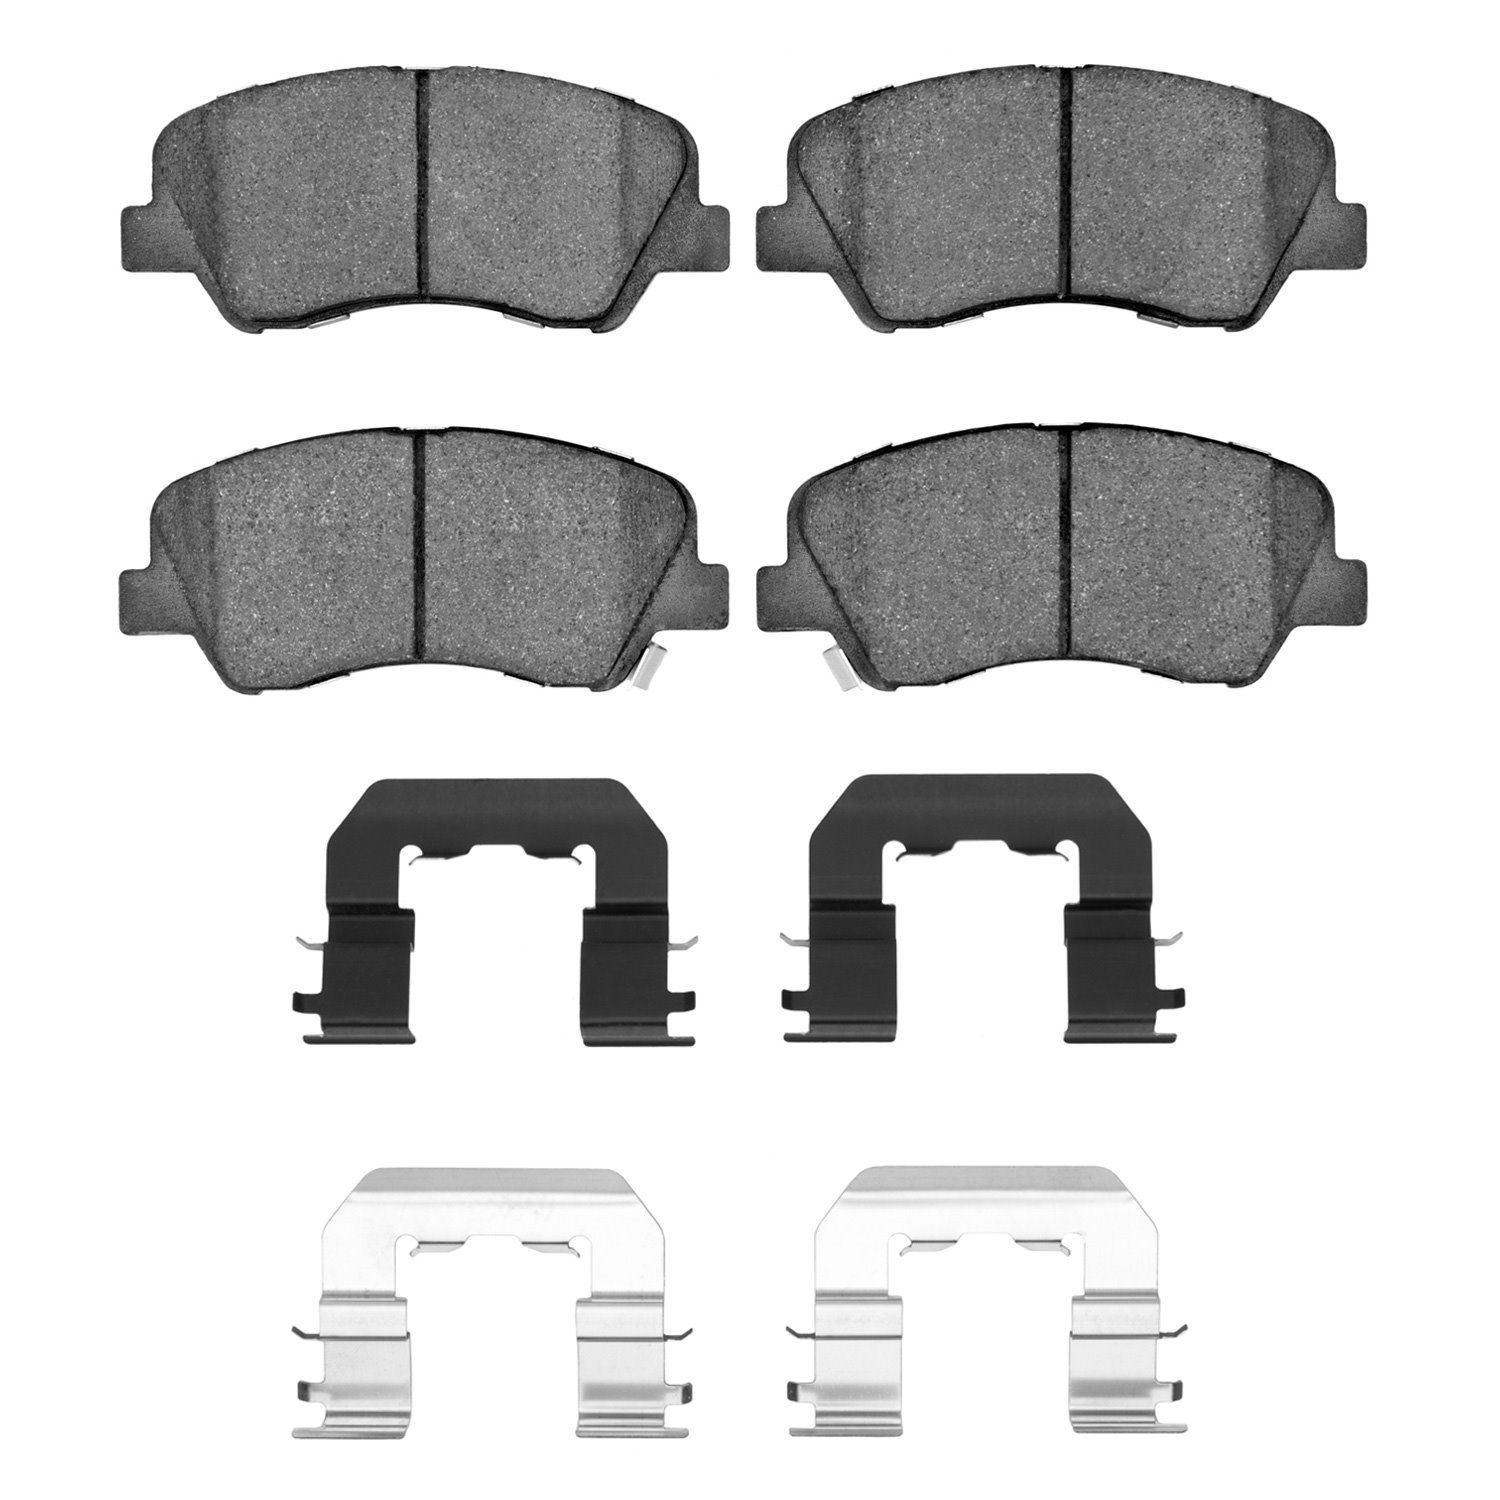 Ceramic Brake Pads & Hardware Kit, 2012-2017 Fits Multiple Makes/Models, Position: Front